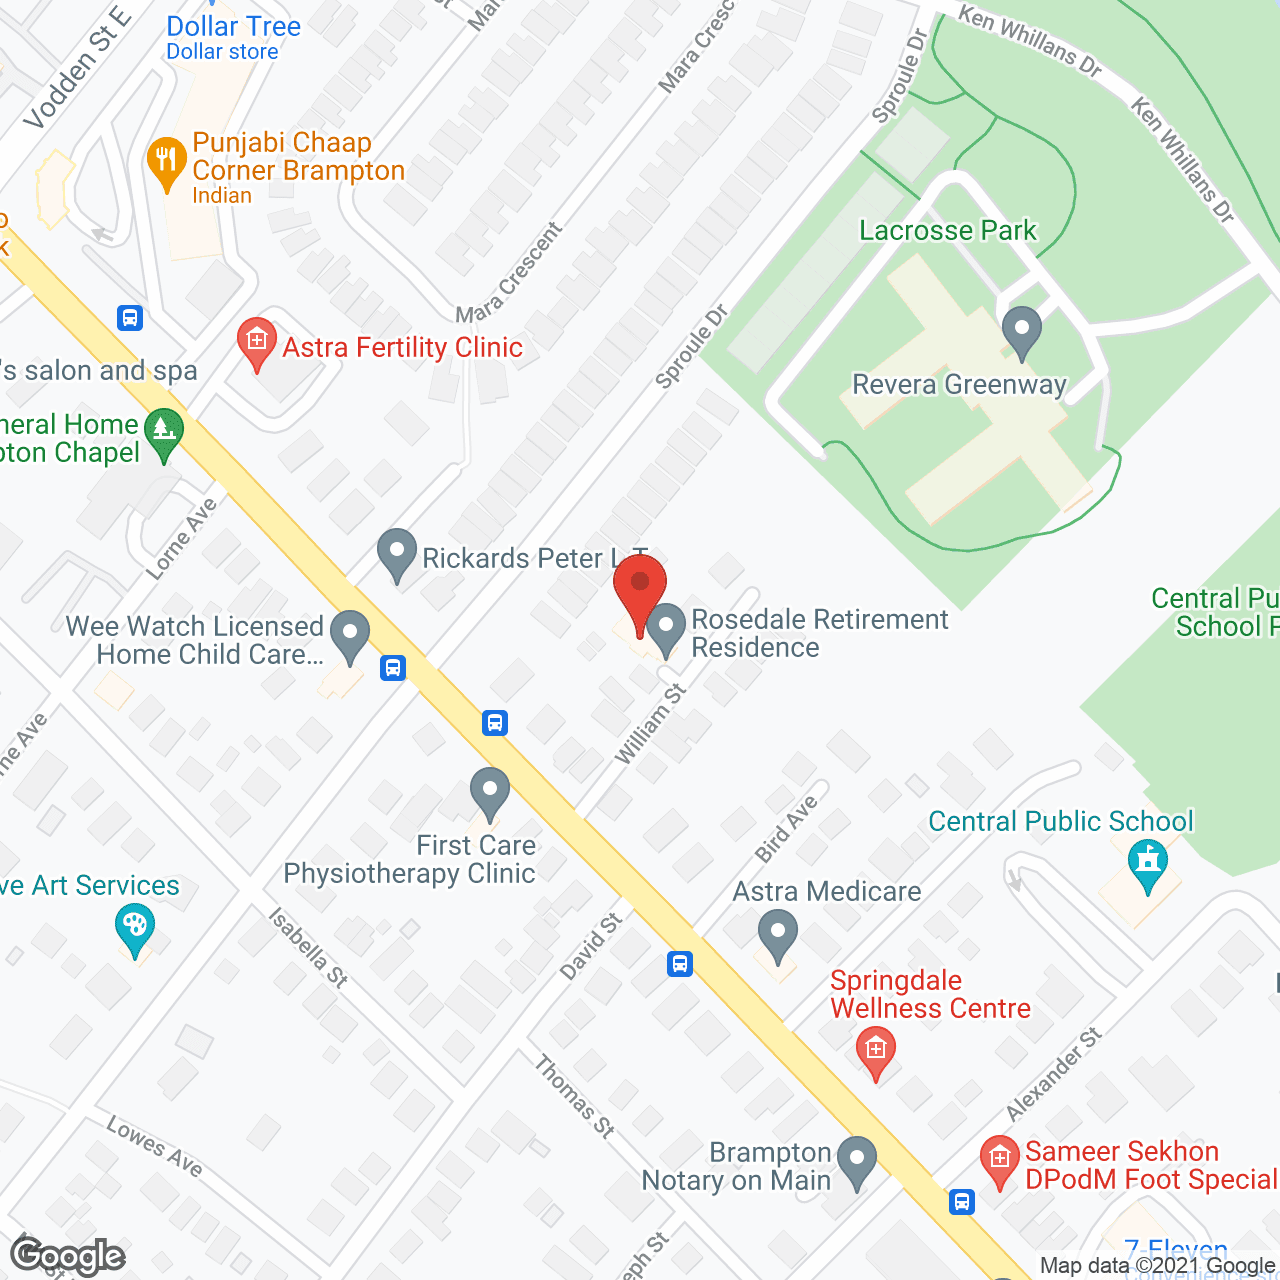 Rosedale Residence in google map